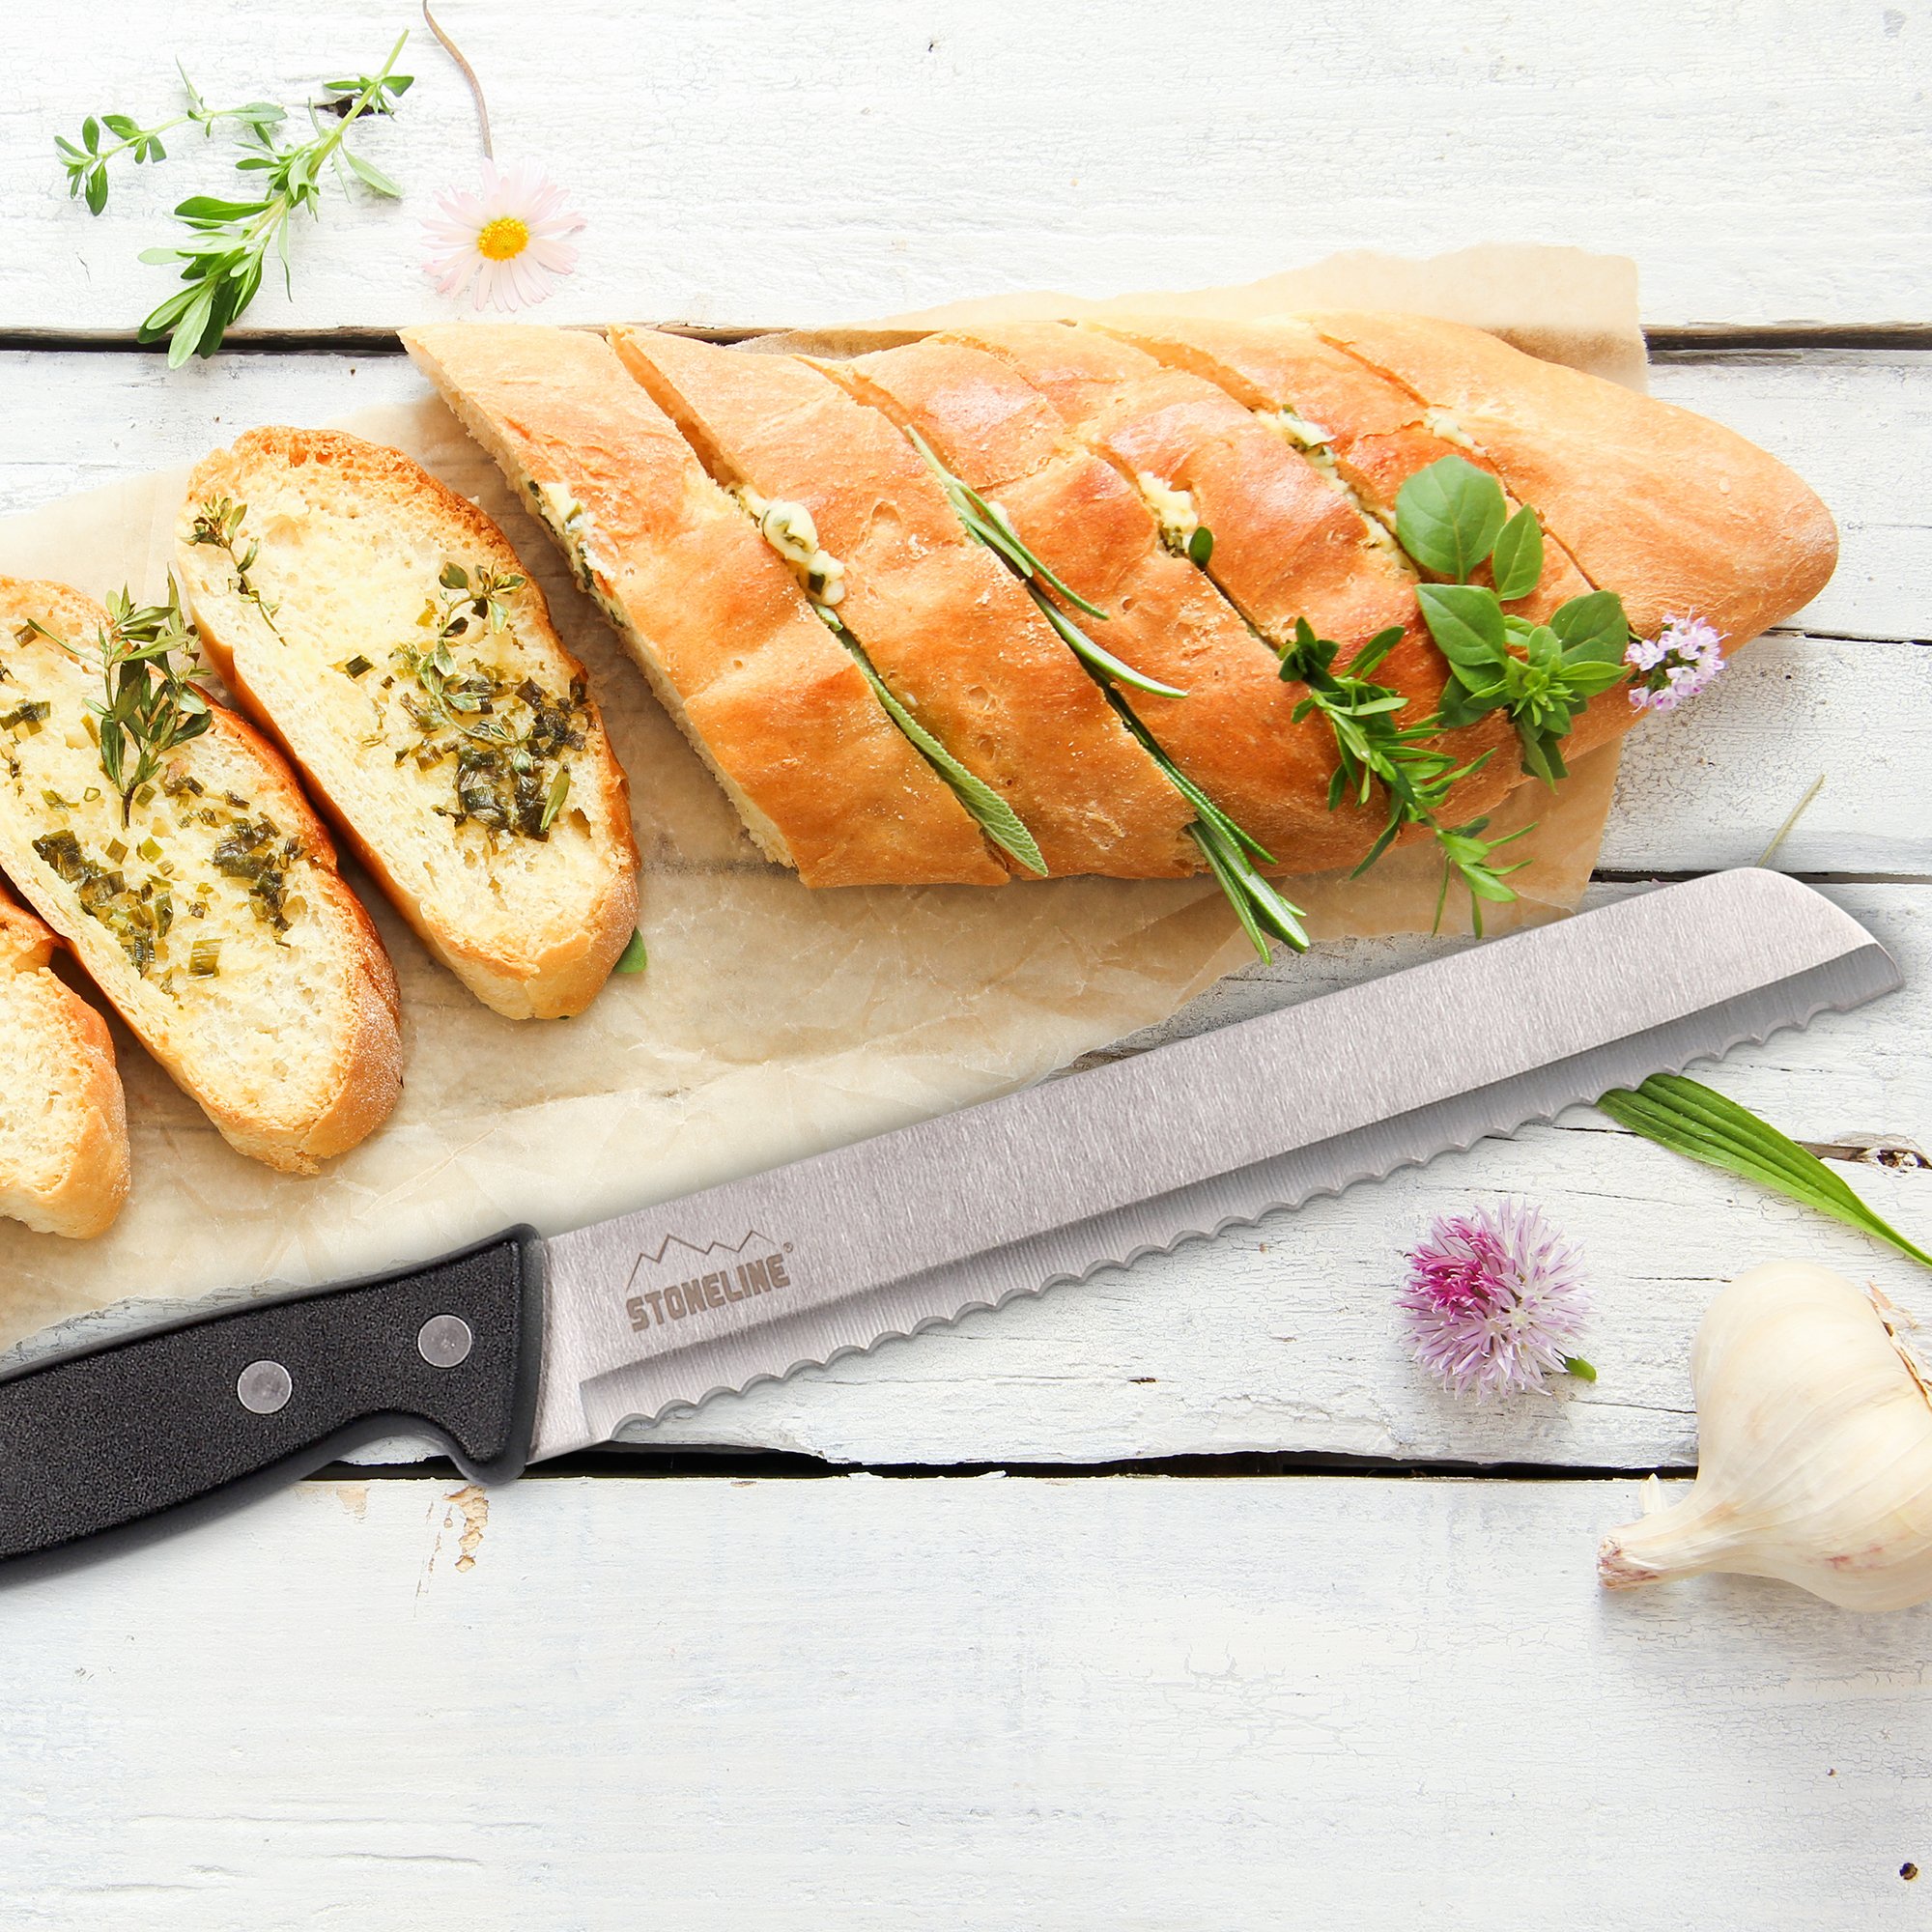 STONELINE® Couteau à pain 31,5 cm en acier inoxydable avec protège-lame